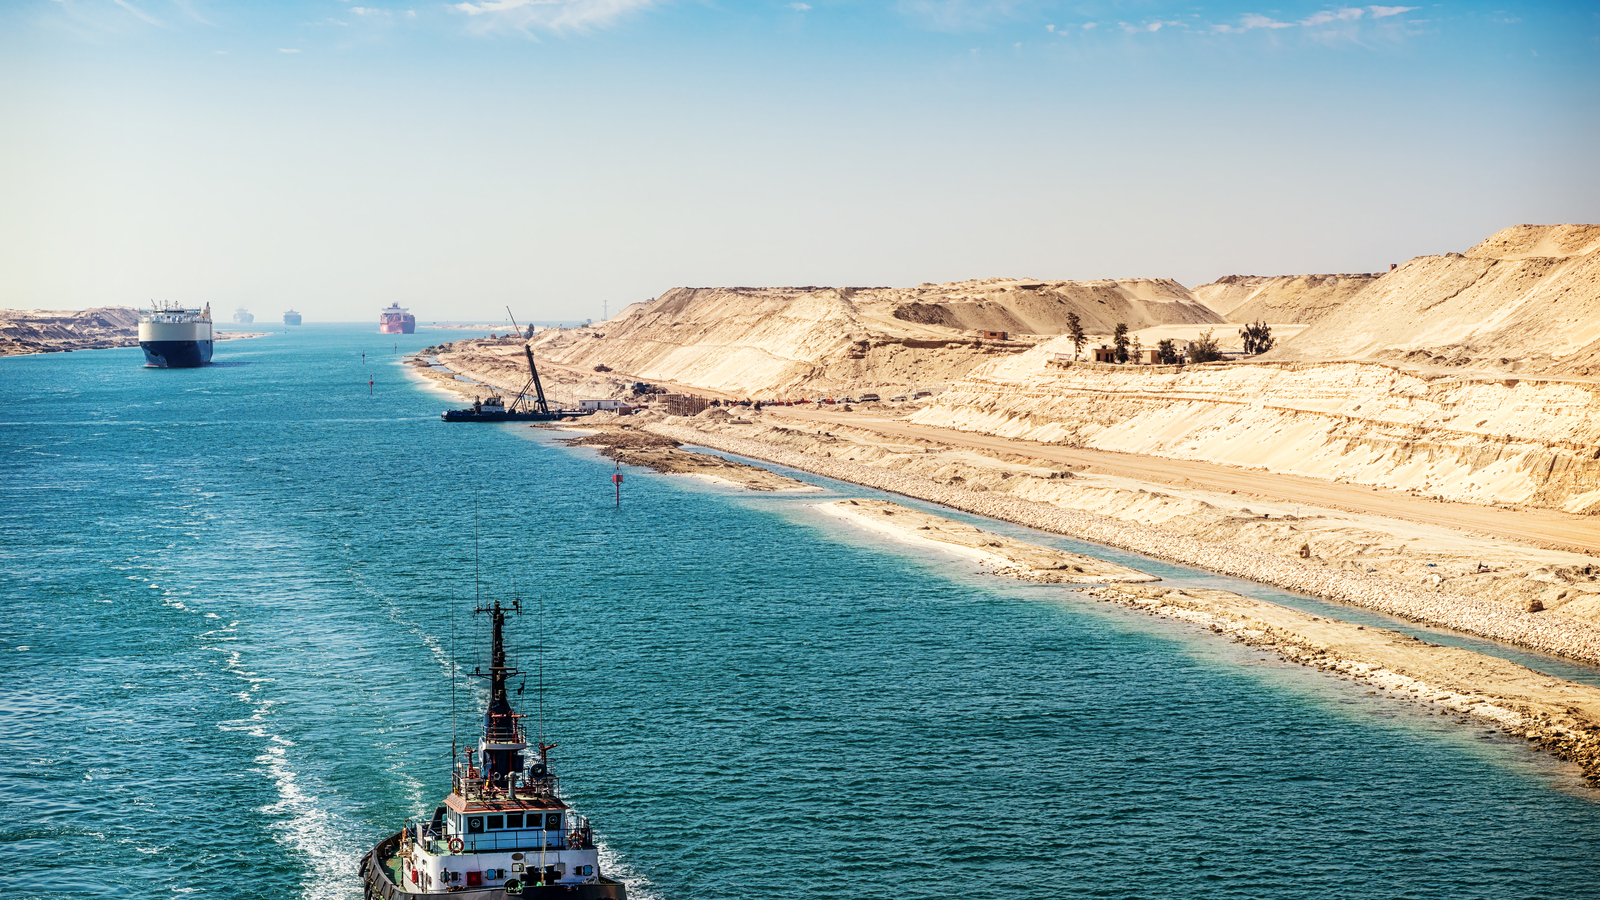 1600 x 900 Suez Canal - tug